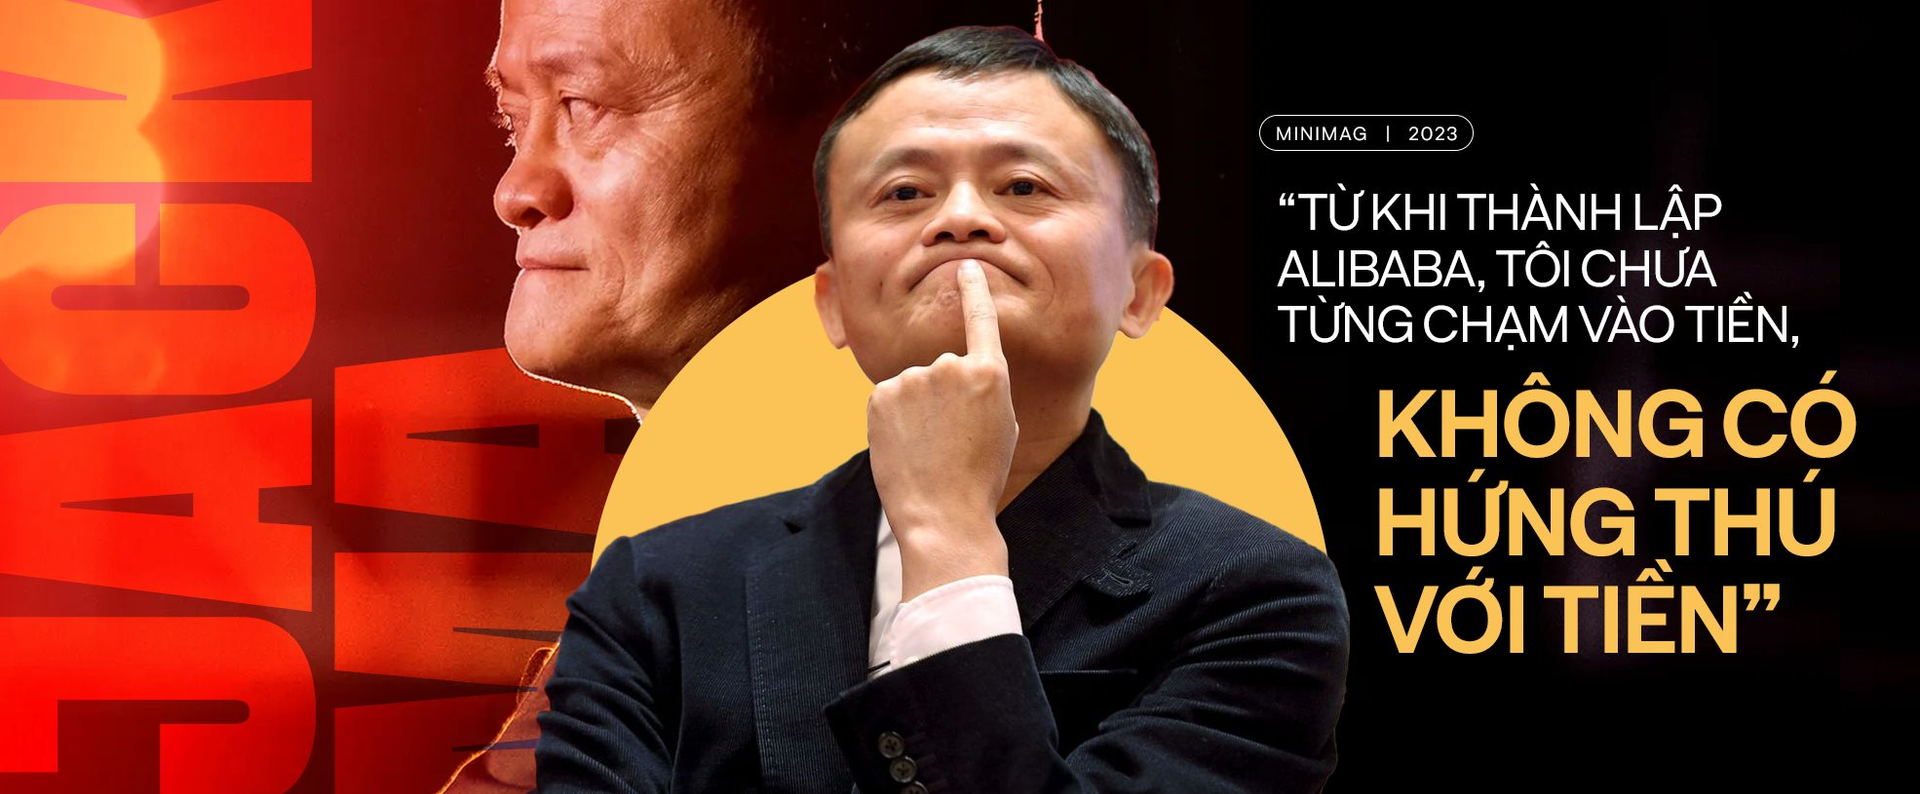 Jack Ma: ‘Từ khi thành lập Alibaba, tôi chưa từng chạm vào tiền, không có hứng thú với tiền’ - Ảnh 2.